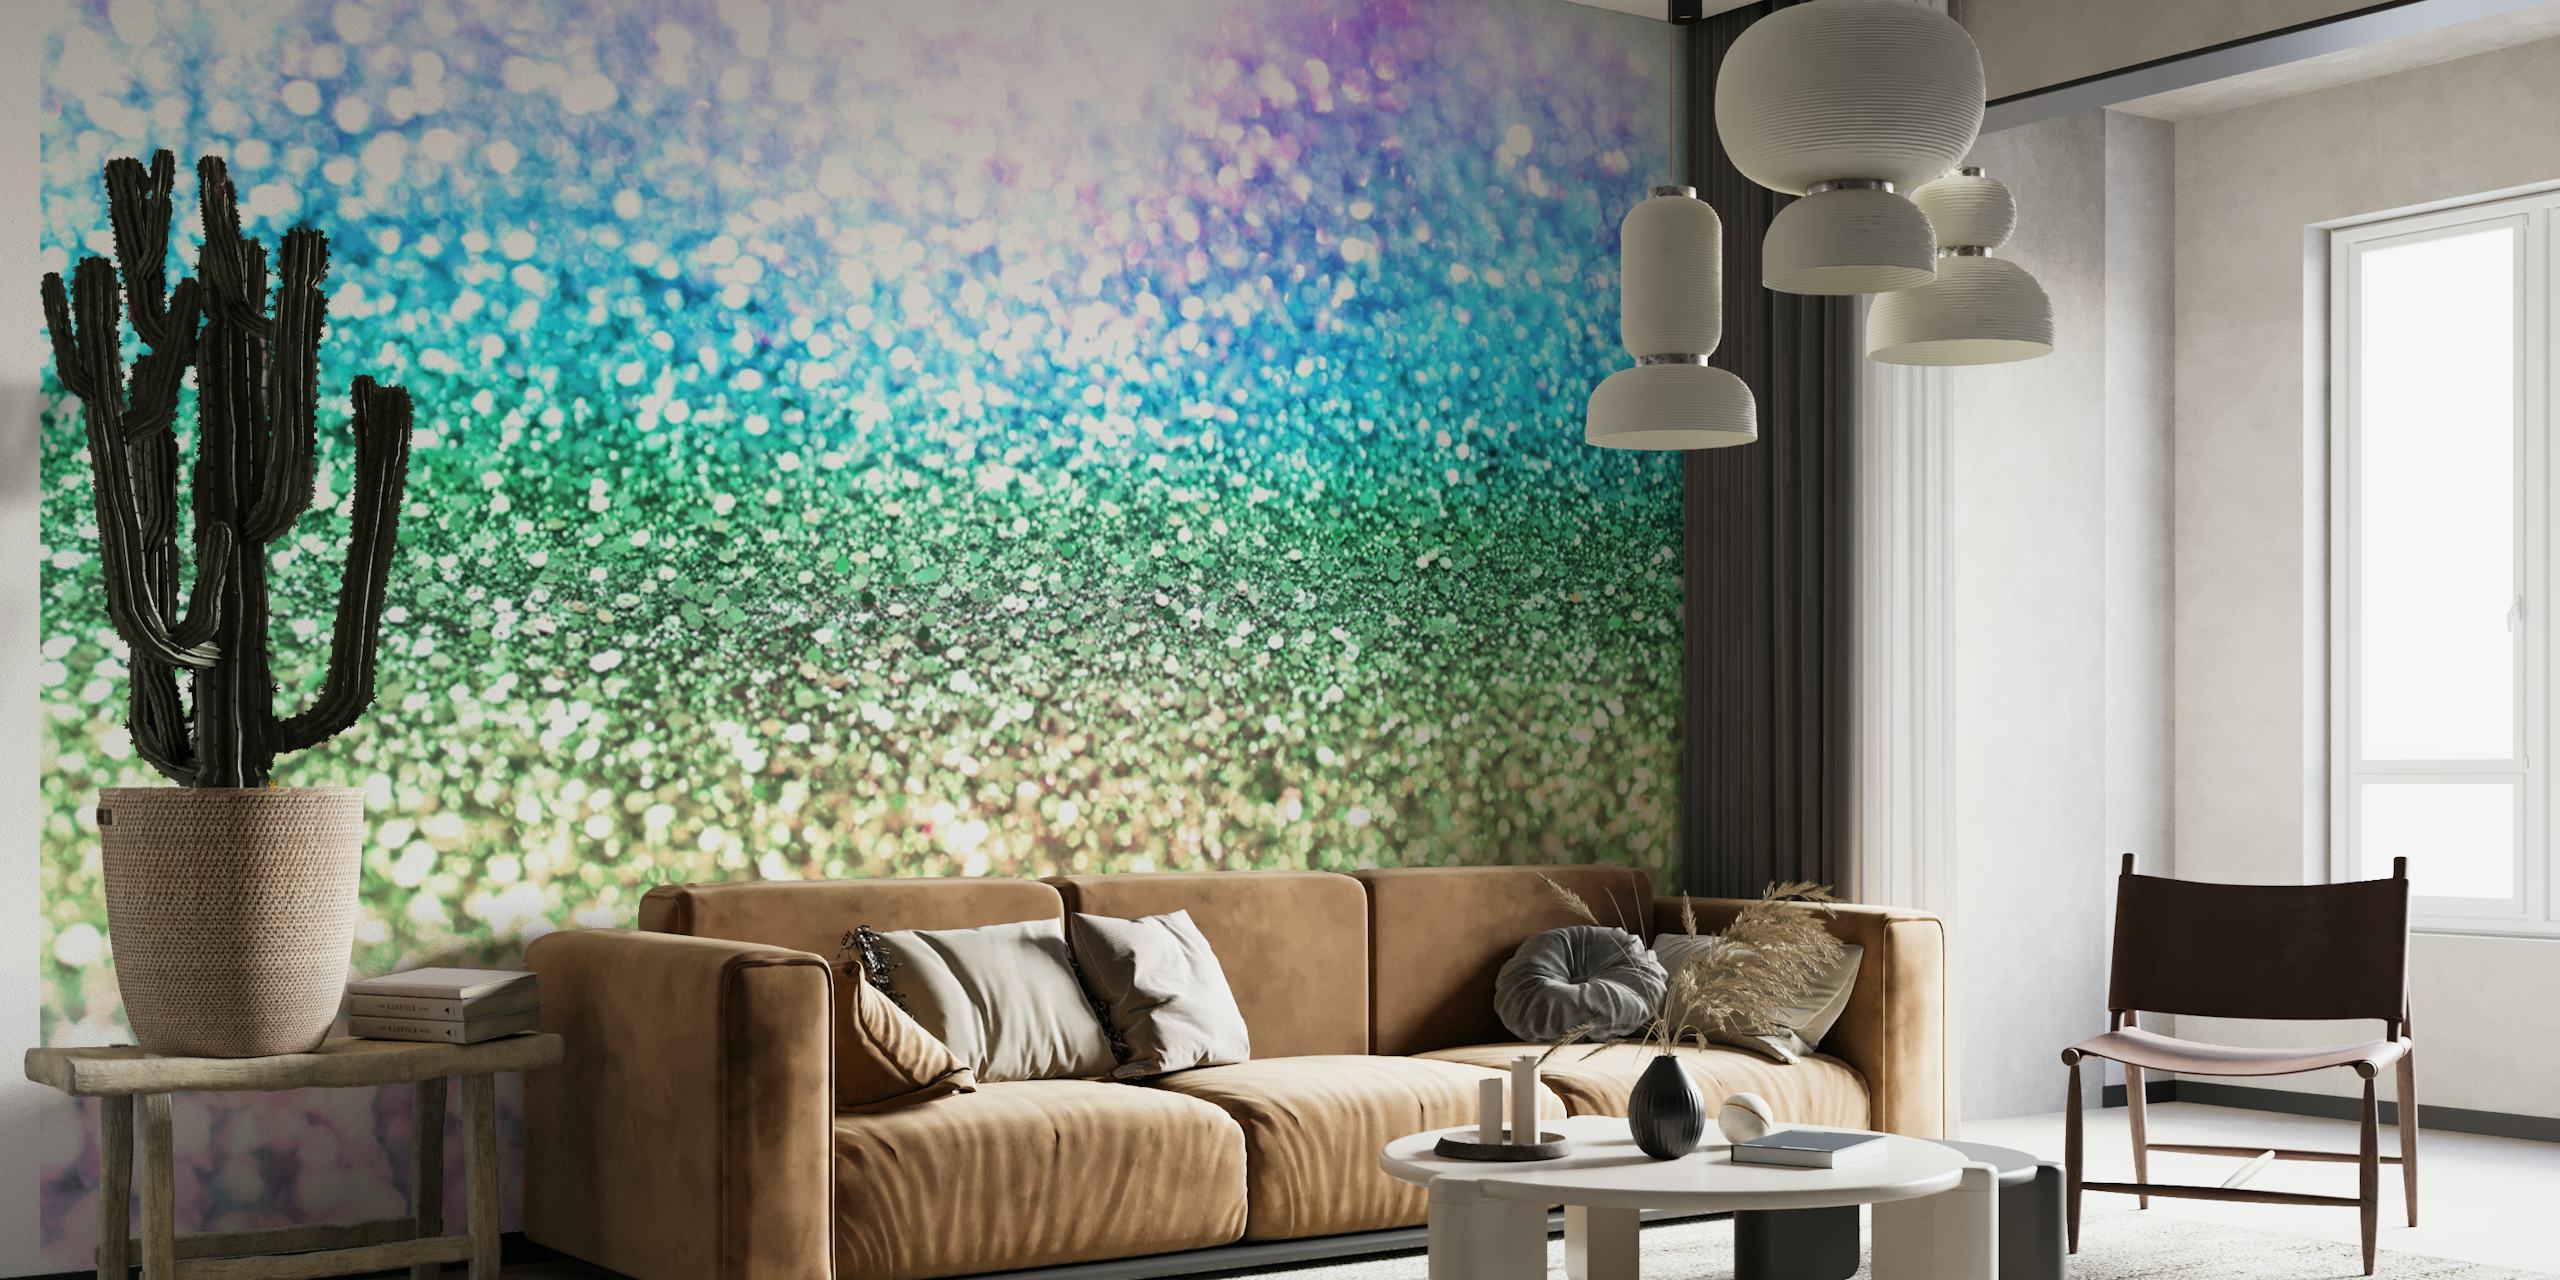 Zidna slika sa svjetlucavim duginim bojama i svjetlucavom teksturom, idealna za živopisne i otkačene teme dekoracije